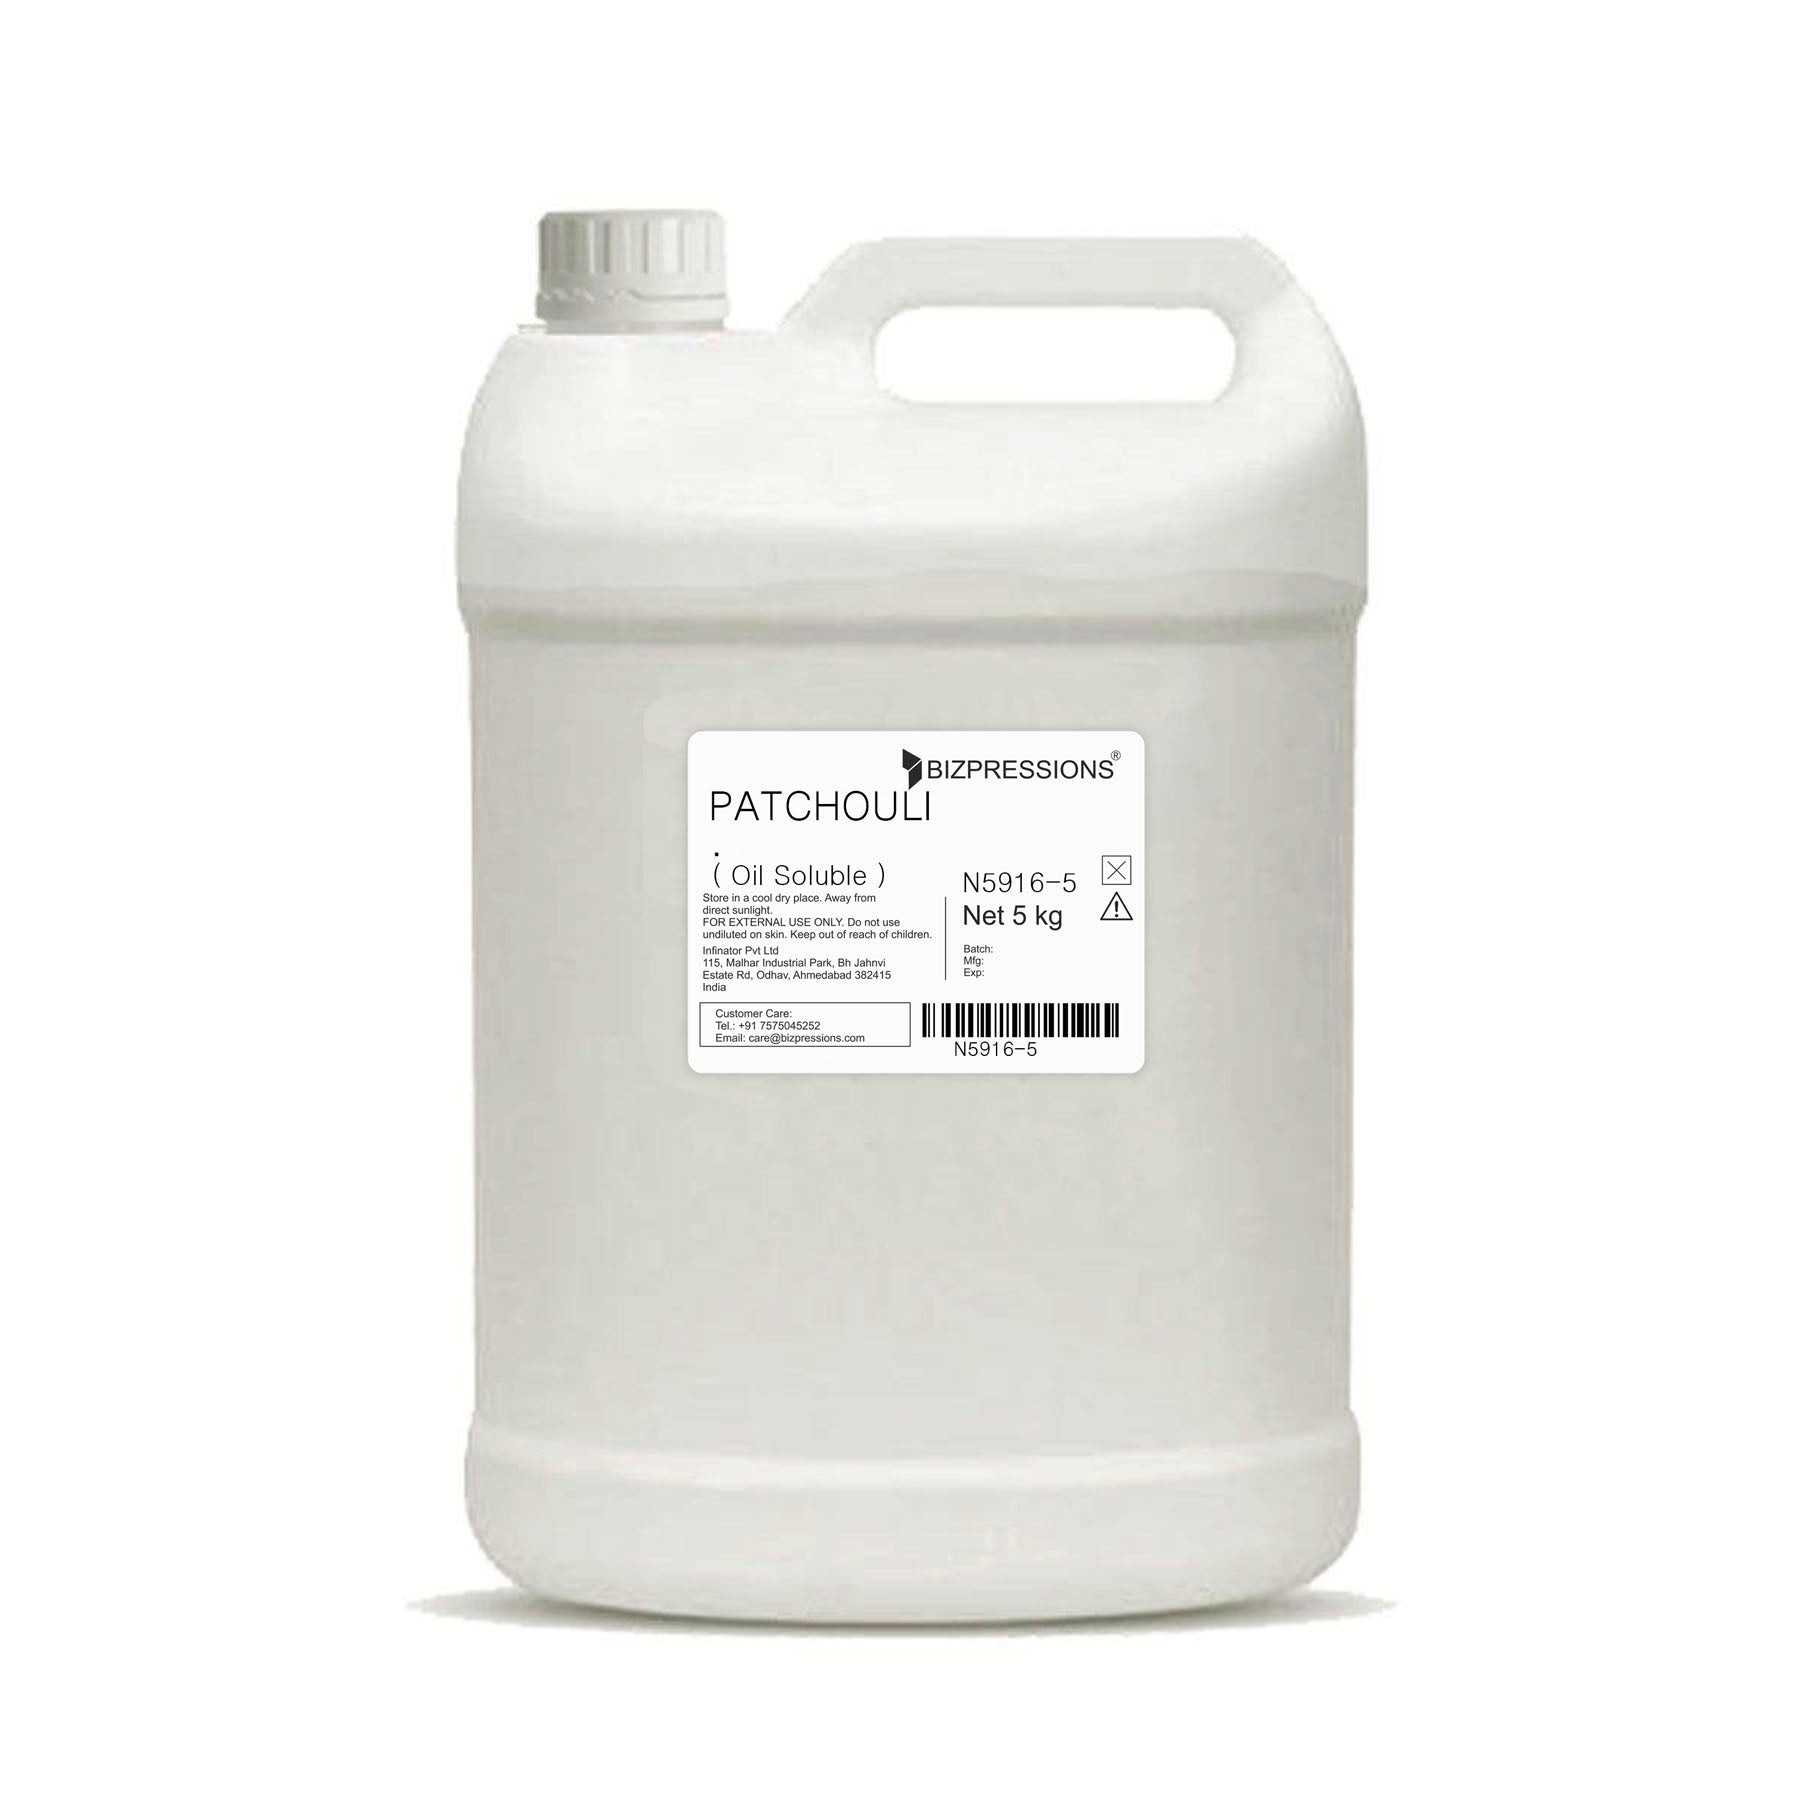 PATCHOULI FRAGRANCE - Fragrance ( Oil Soluble ) - 5 kg